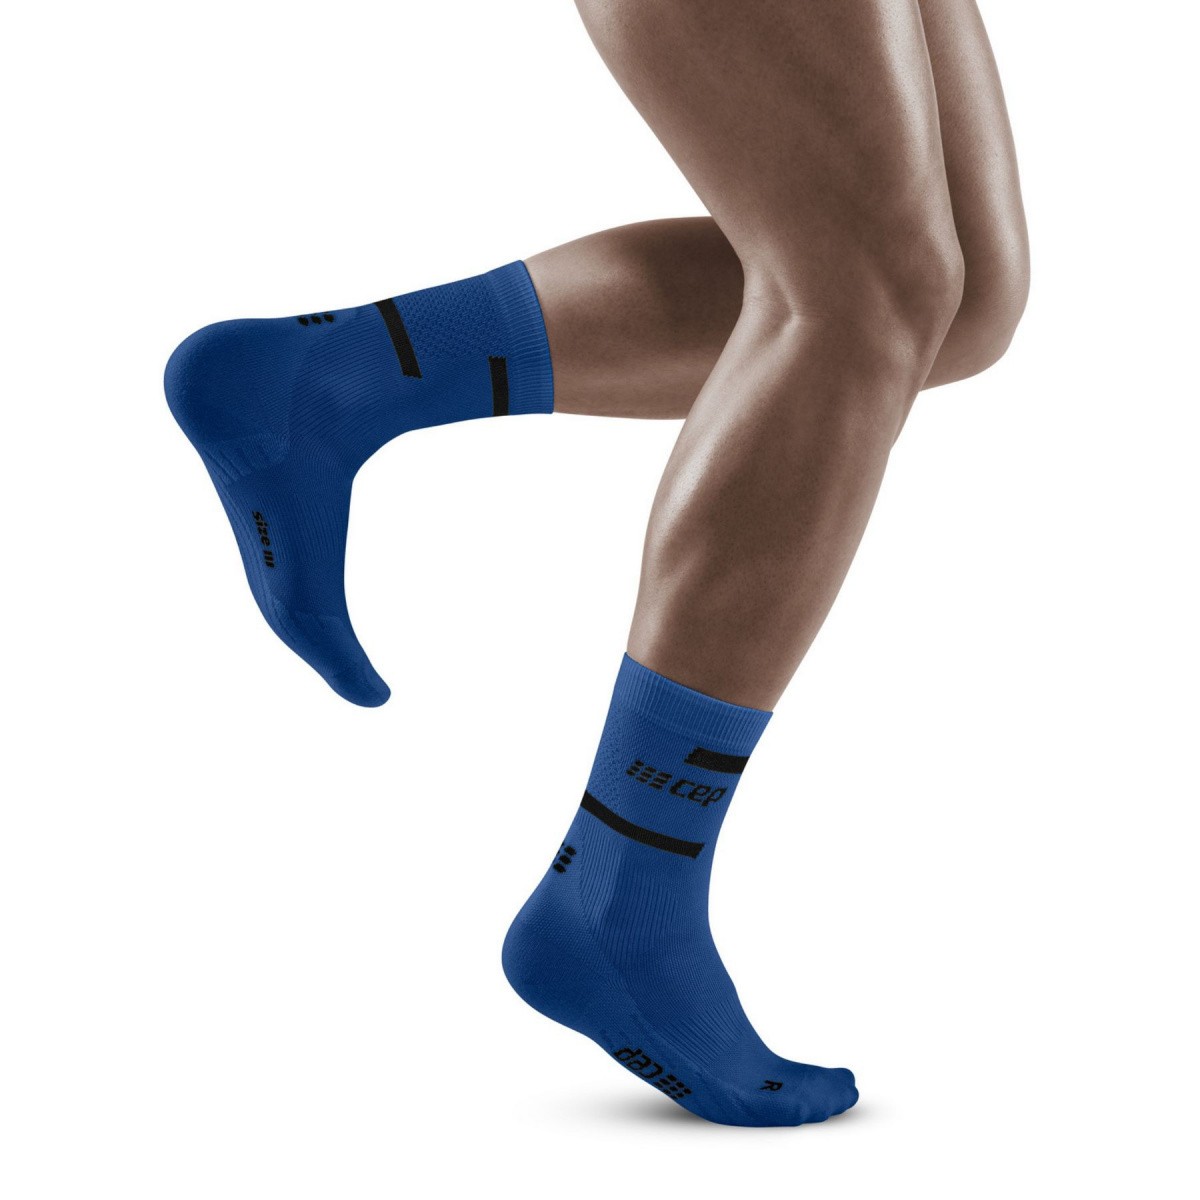 Носки компрессионные мужские. Cep спортивные носки мужские. Компрессионные носки. Компрессионные носки для мужчин. Носки мужские синие.